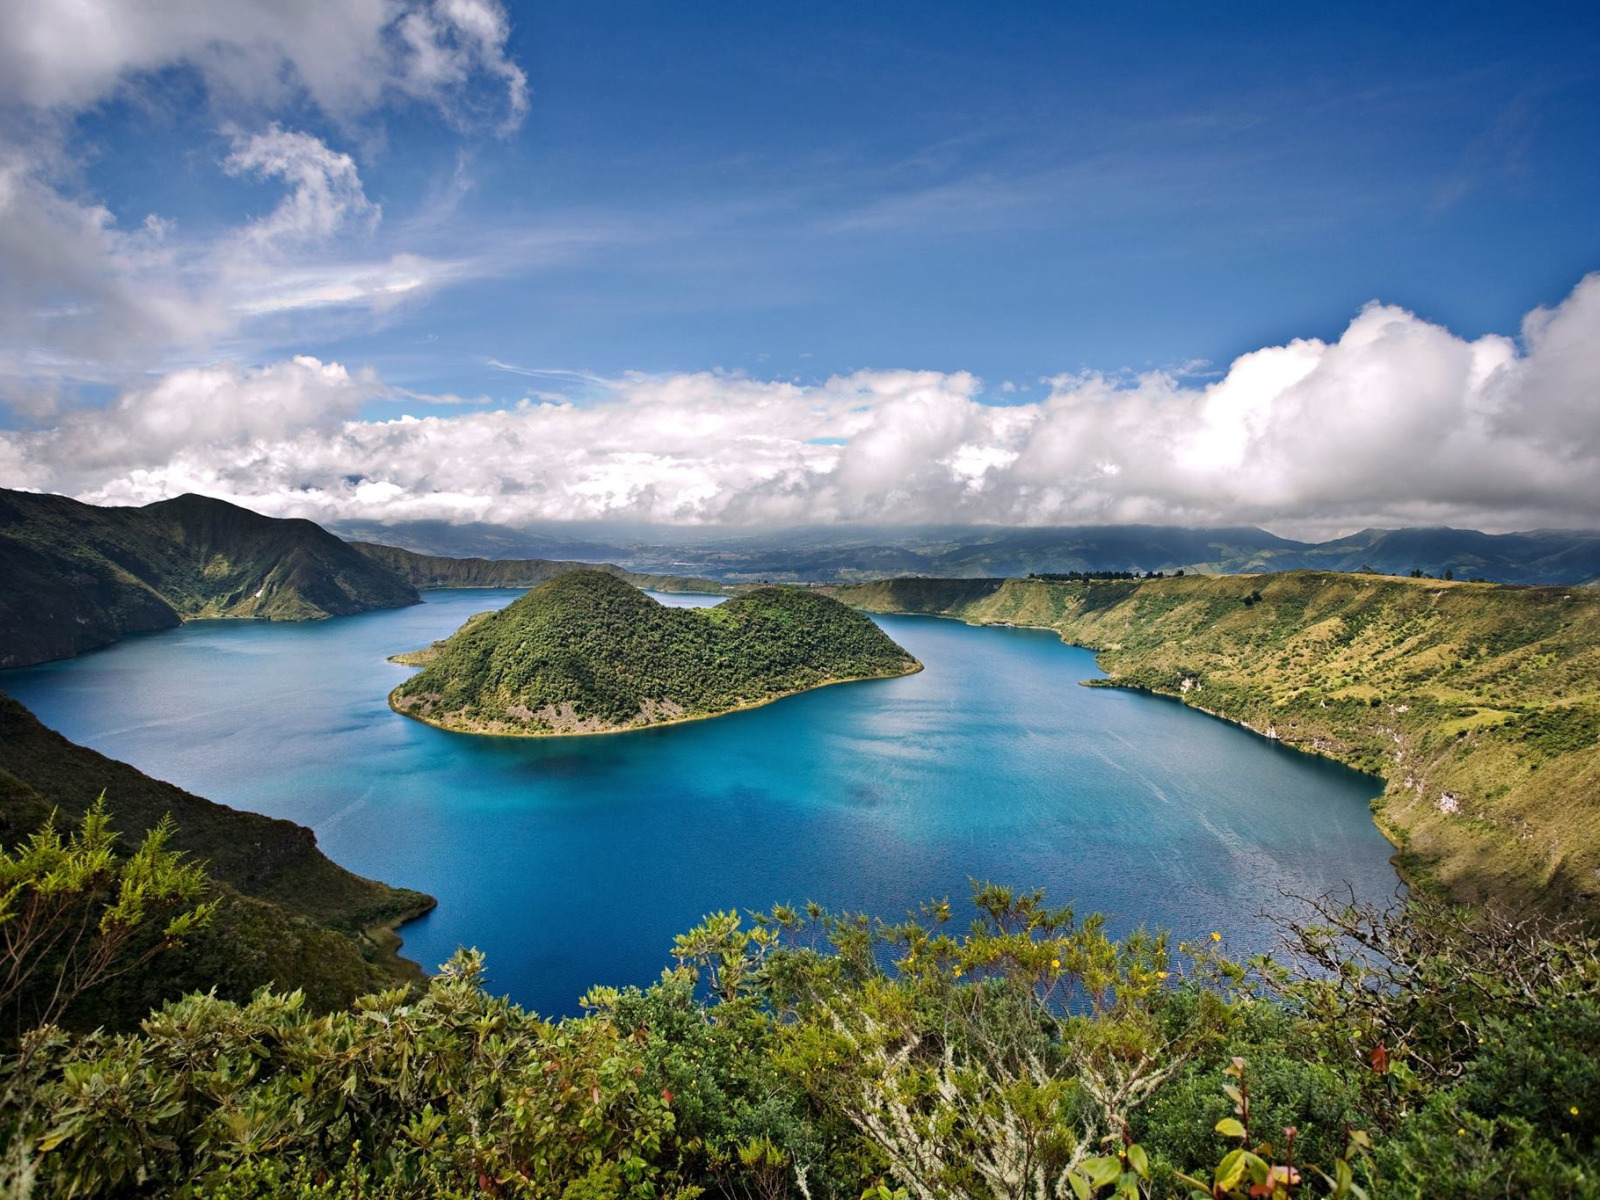 Пресноводное озеро в латинской америке. Эквадор Галапагосские острова. Южная Америка Галапагосские острова. Национальный парк «Галапагосские острова». Галапагосские острова, Эквадор климат.